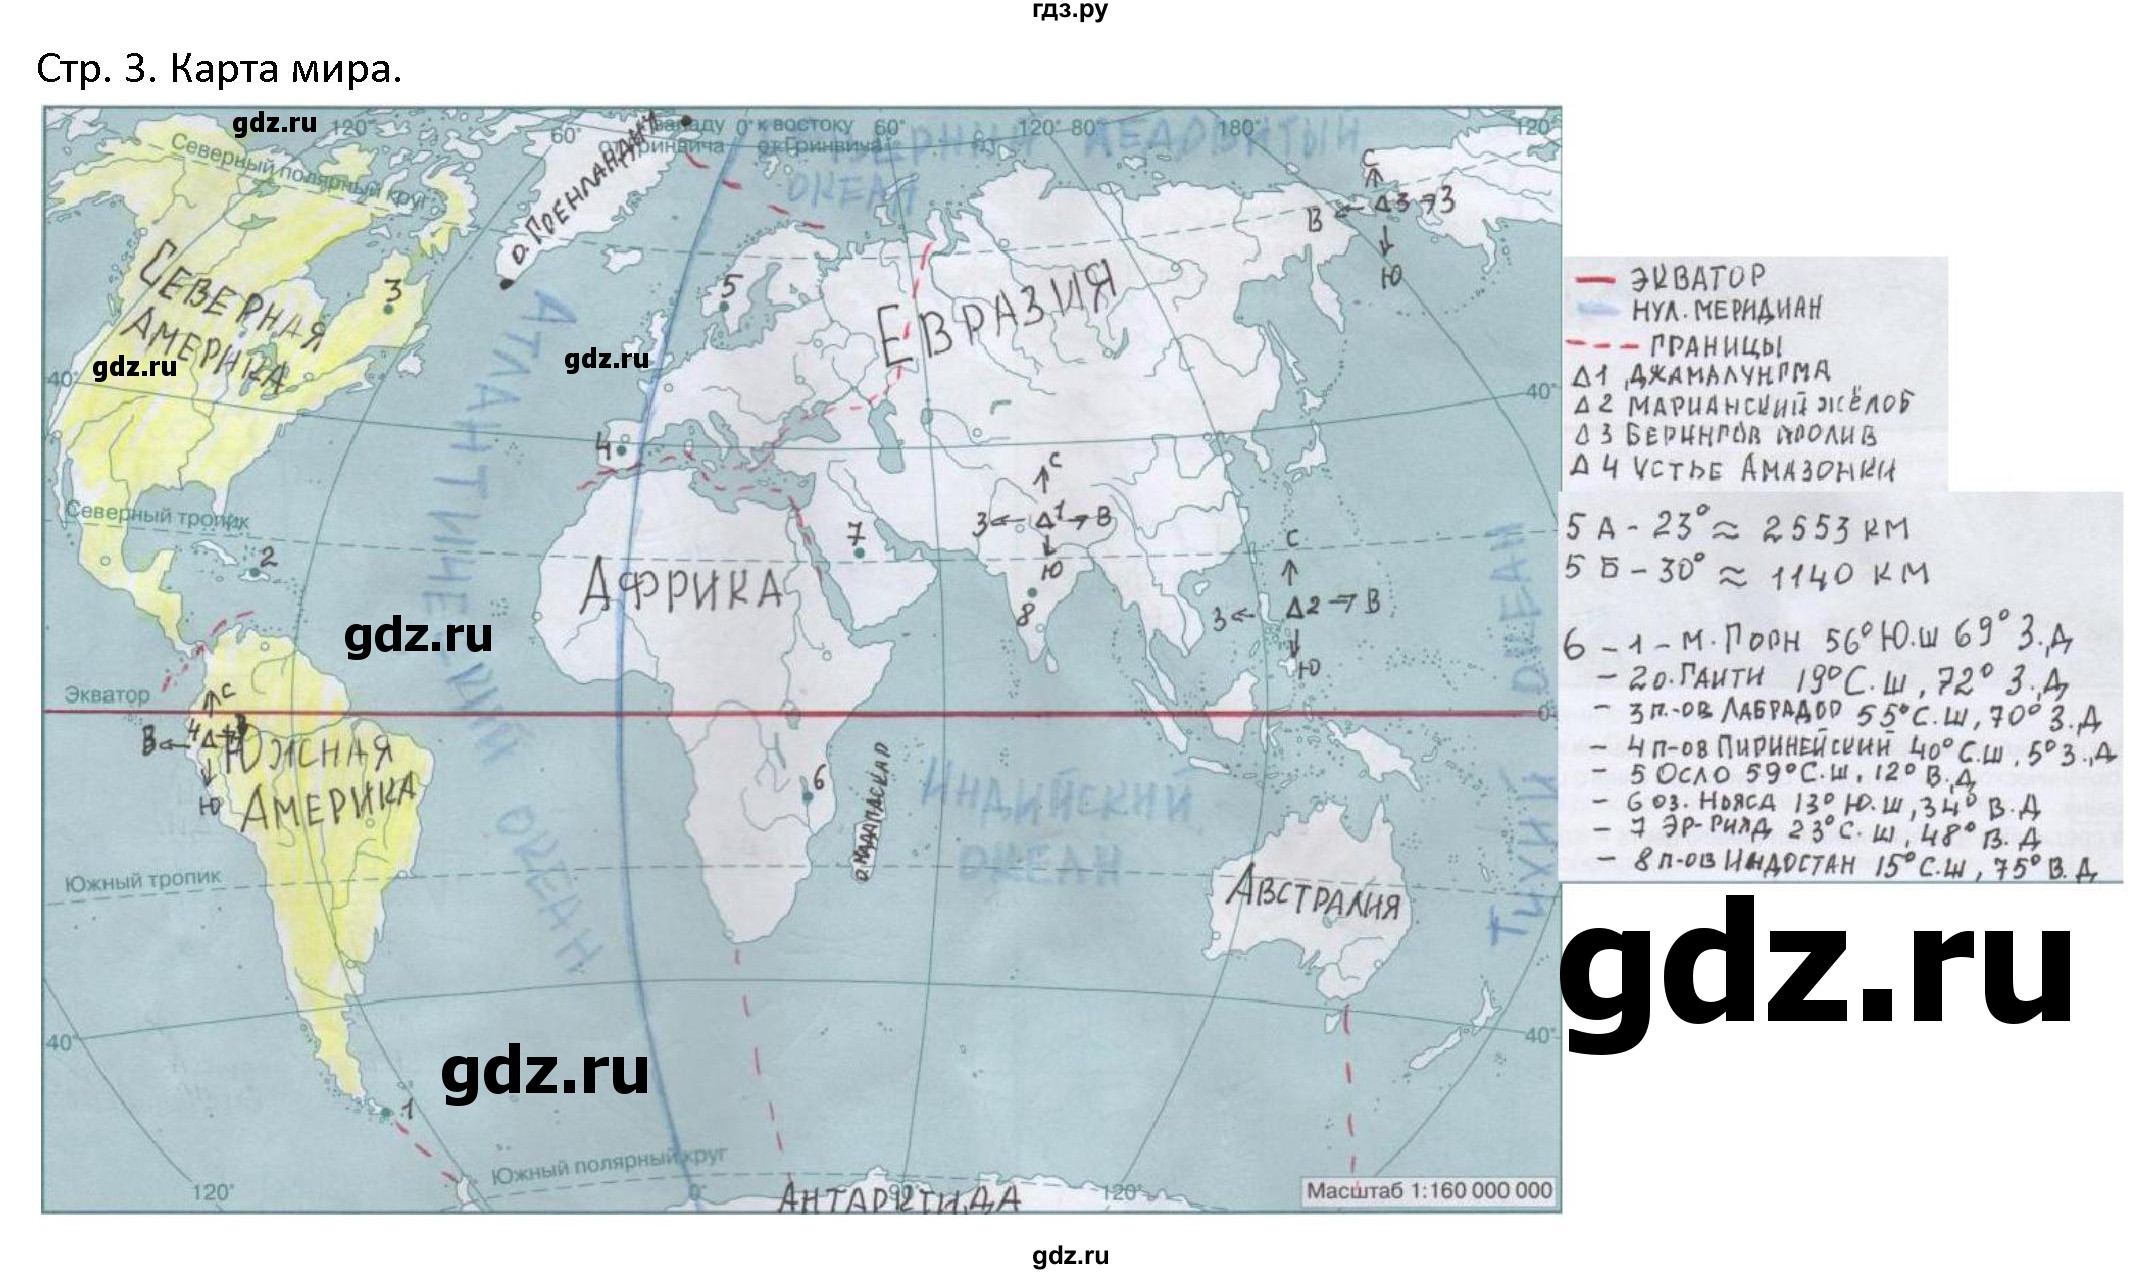 Гдз по фото по географии контурные карты 7 класс